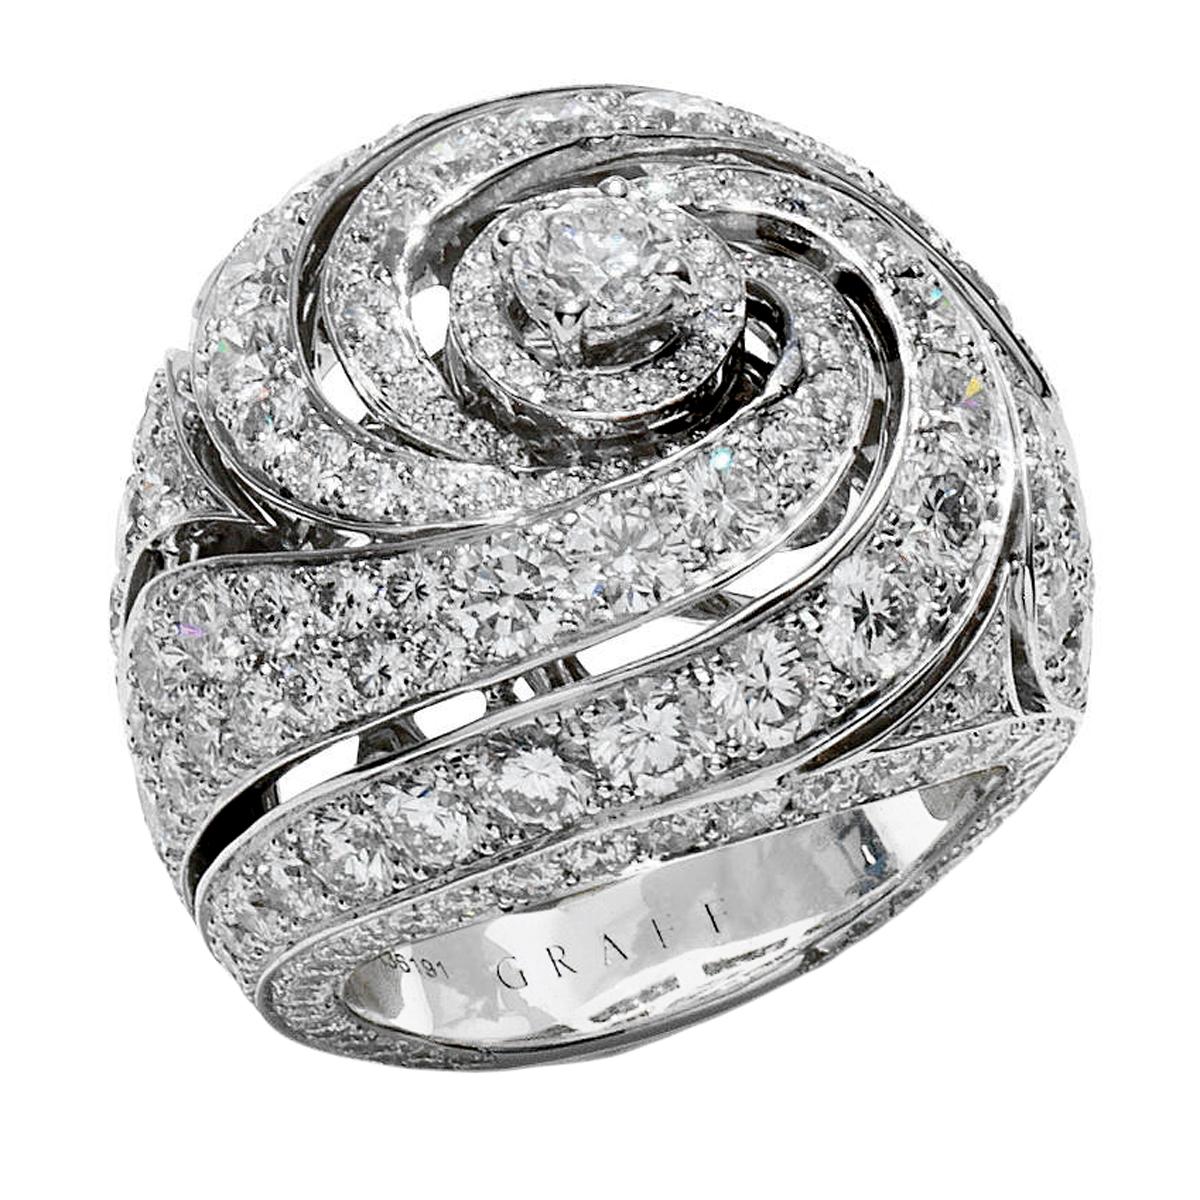 Une incroyable bague en diamant de Graff présentant 6,83 cts des plus beaux diamants ronds de taille brillant, sertis en or blanc 18 carats. Cette bague cocktail en diamant mesure 5 1/2 et peut être redimensionnée si nécessaire.